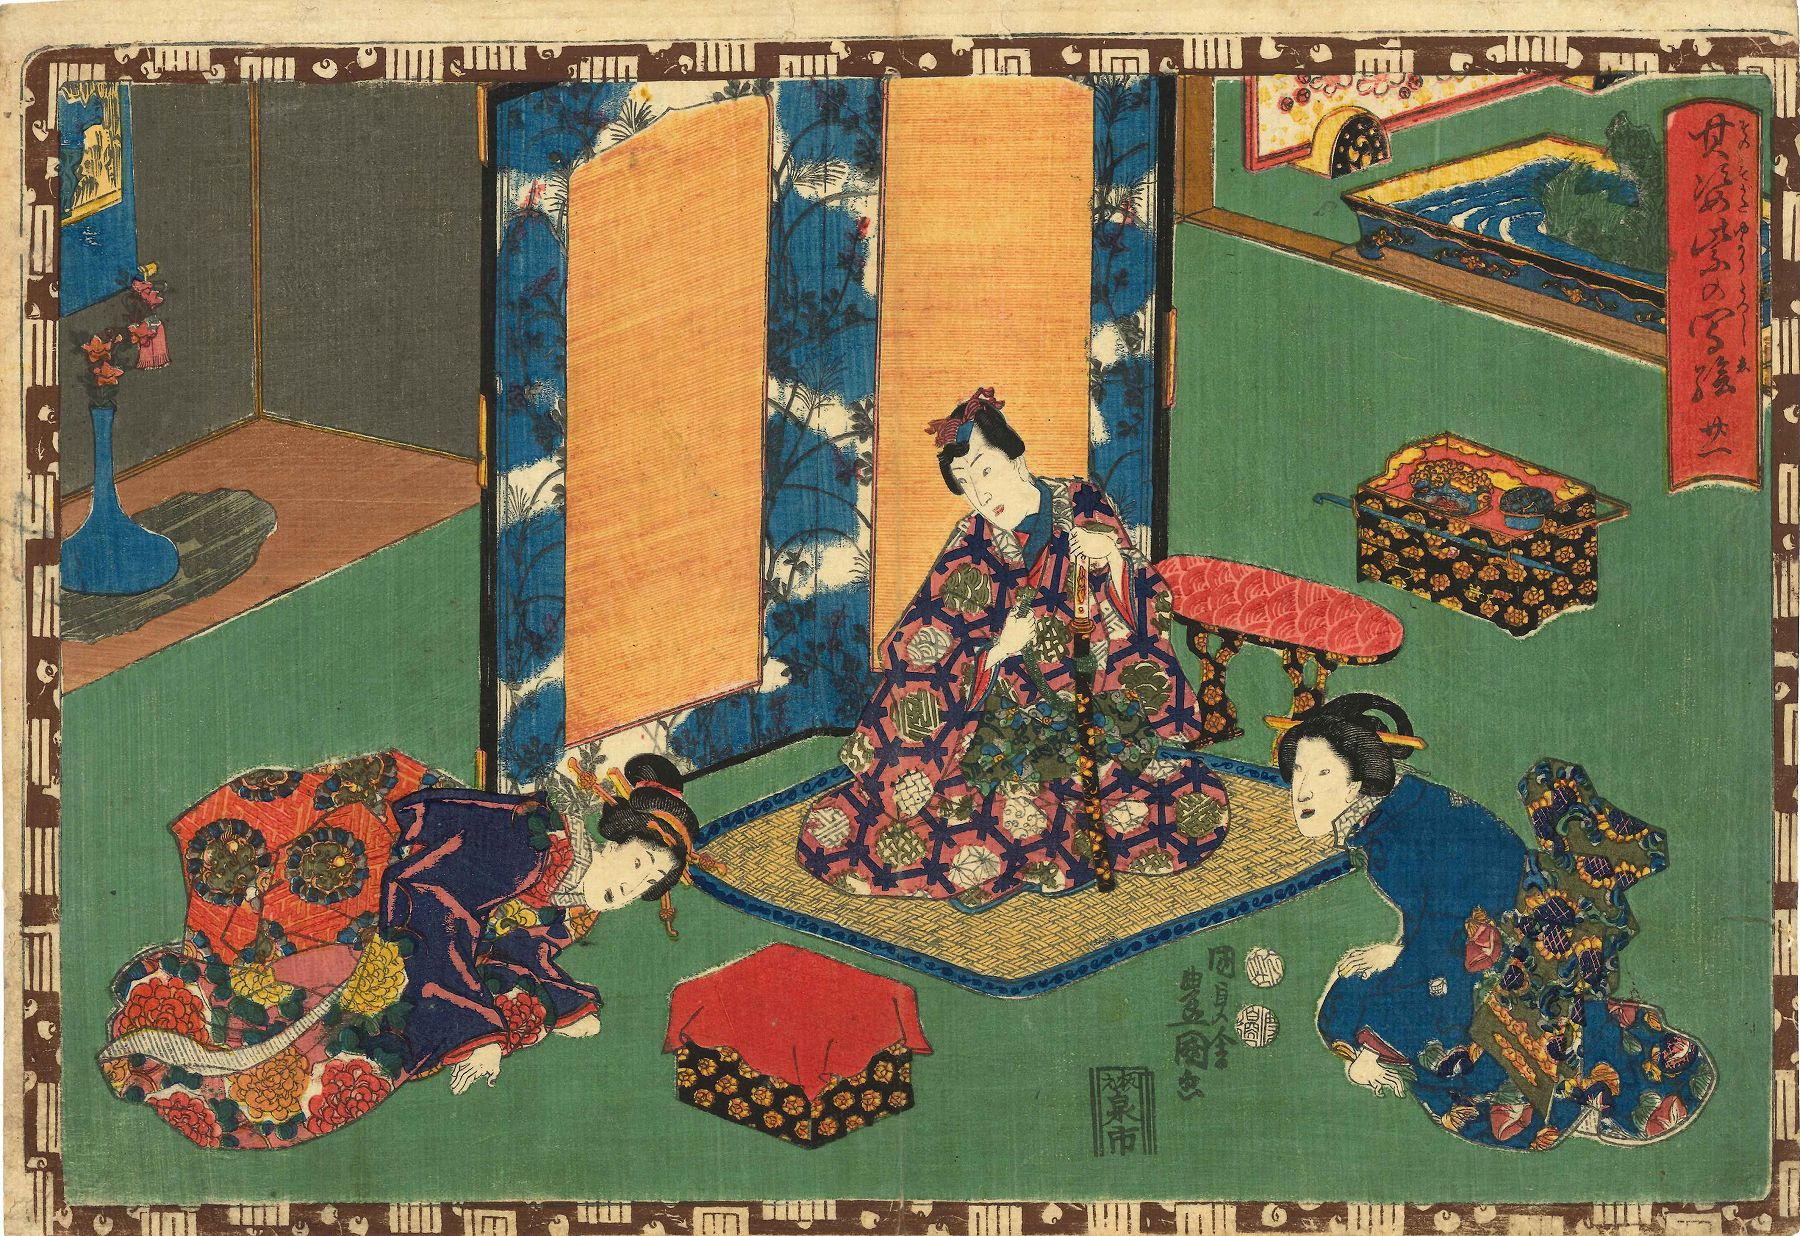 TOYOKUN IIII Chapter 21, Otome, from Sono sugata murasaki no utsushi-e  (Magic lantern slides of that romantic purple figure) | Japanese Ukiyo-e  Prints | Hara Shobo